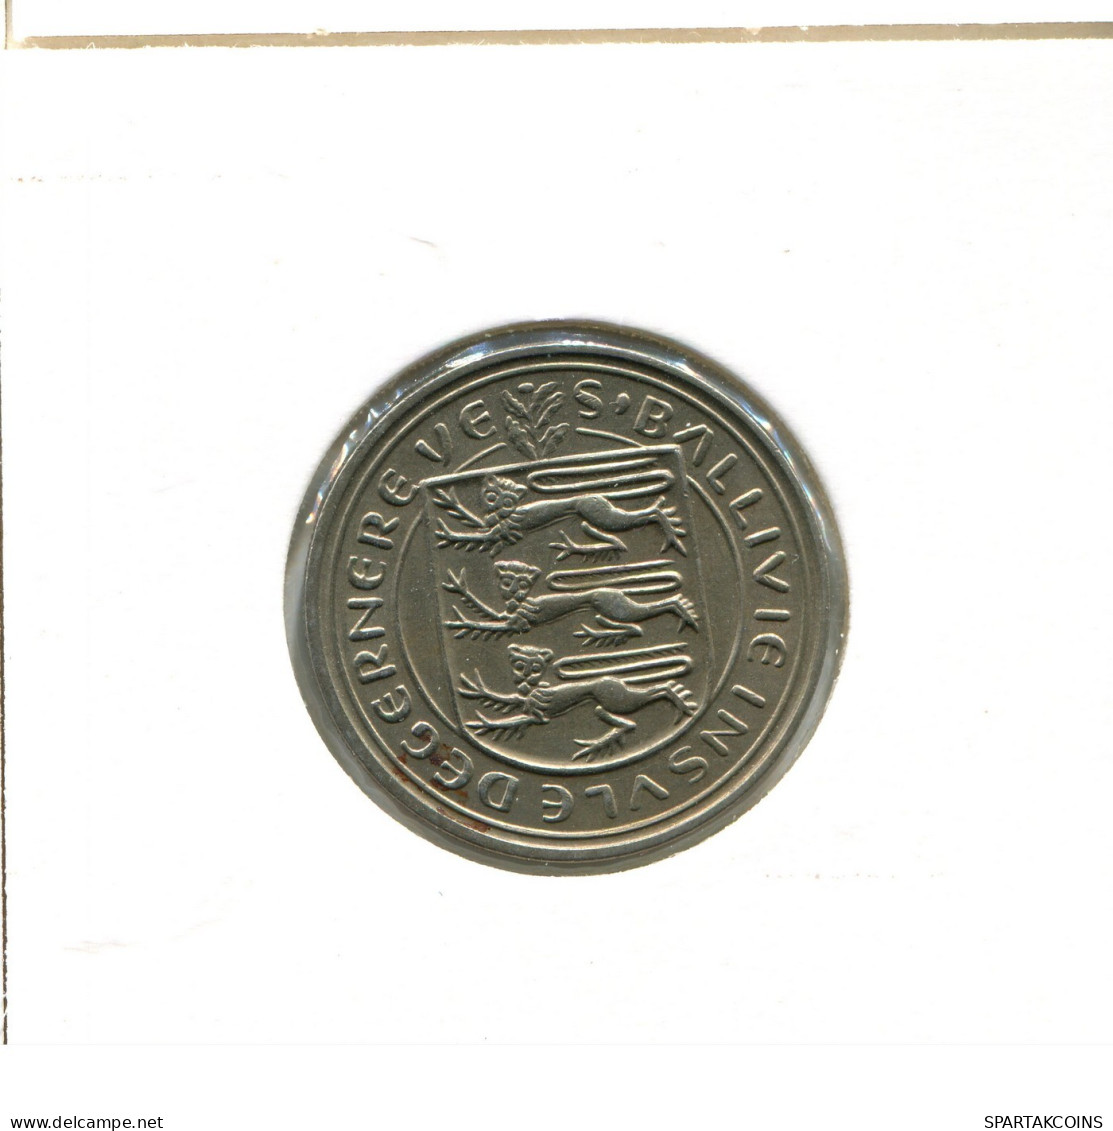 5 NEW PENCE 1968 GUERNSEY Moneda #AX708.E.A - Guernsey